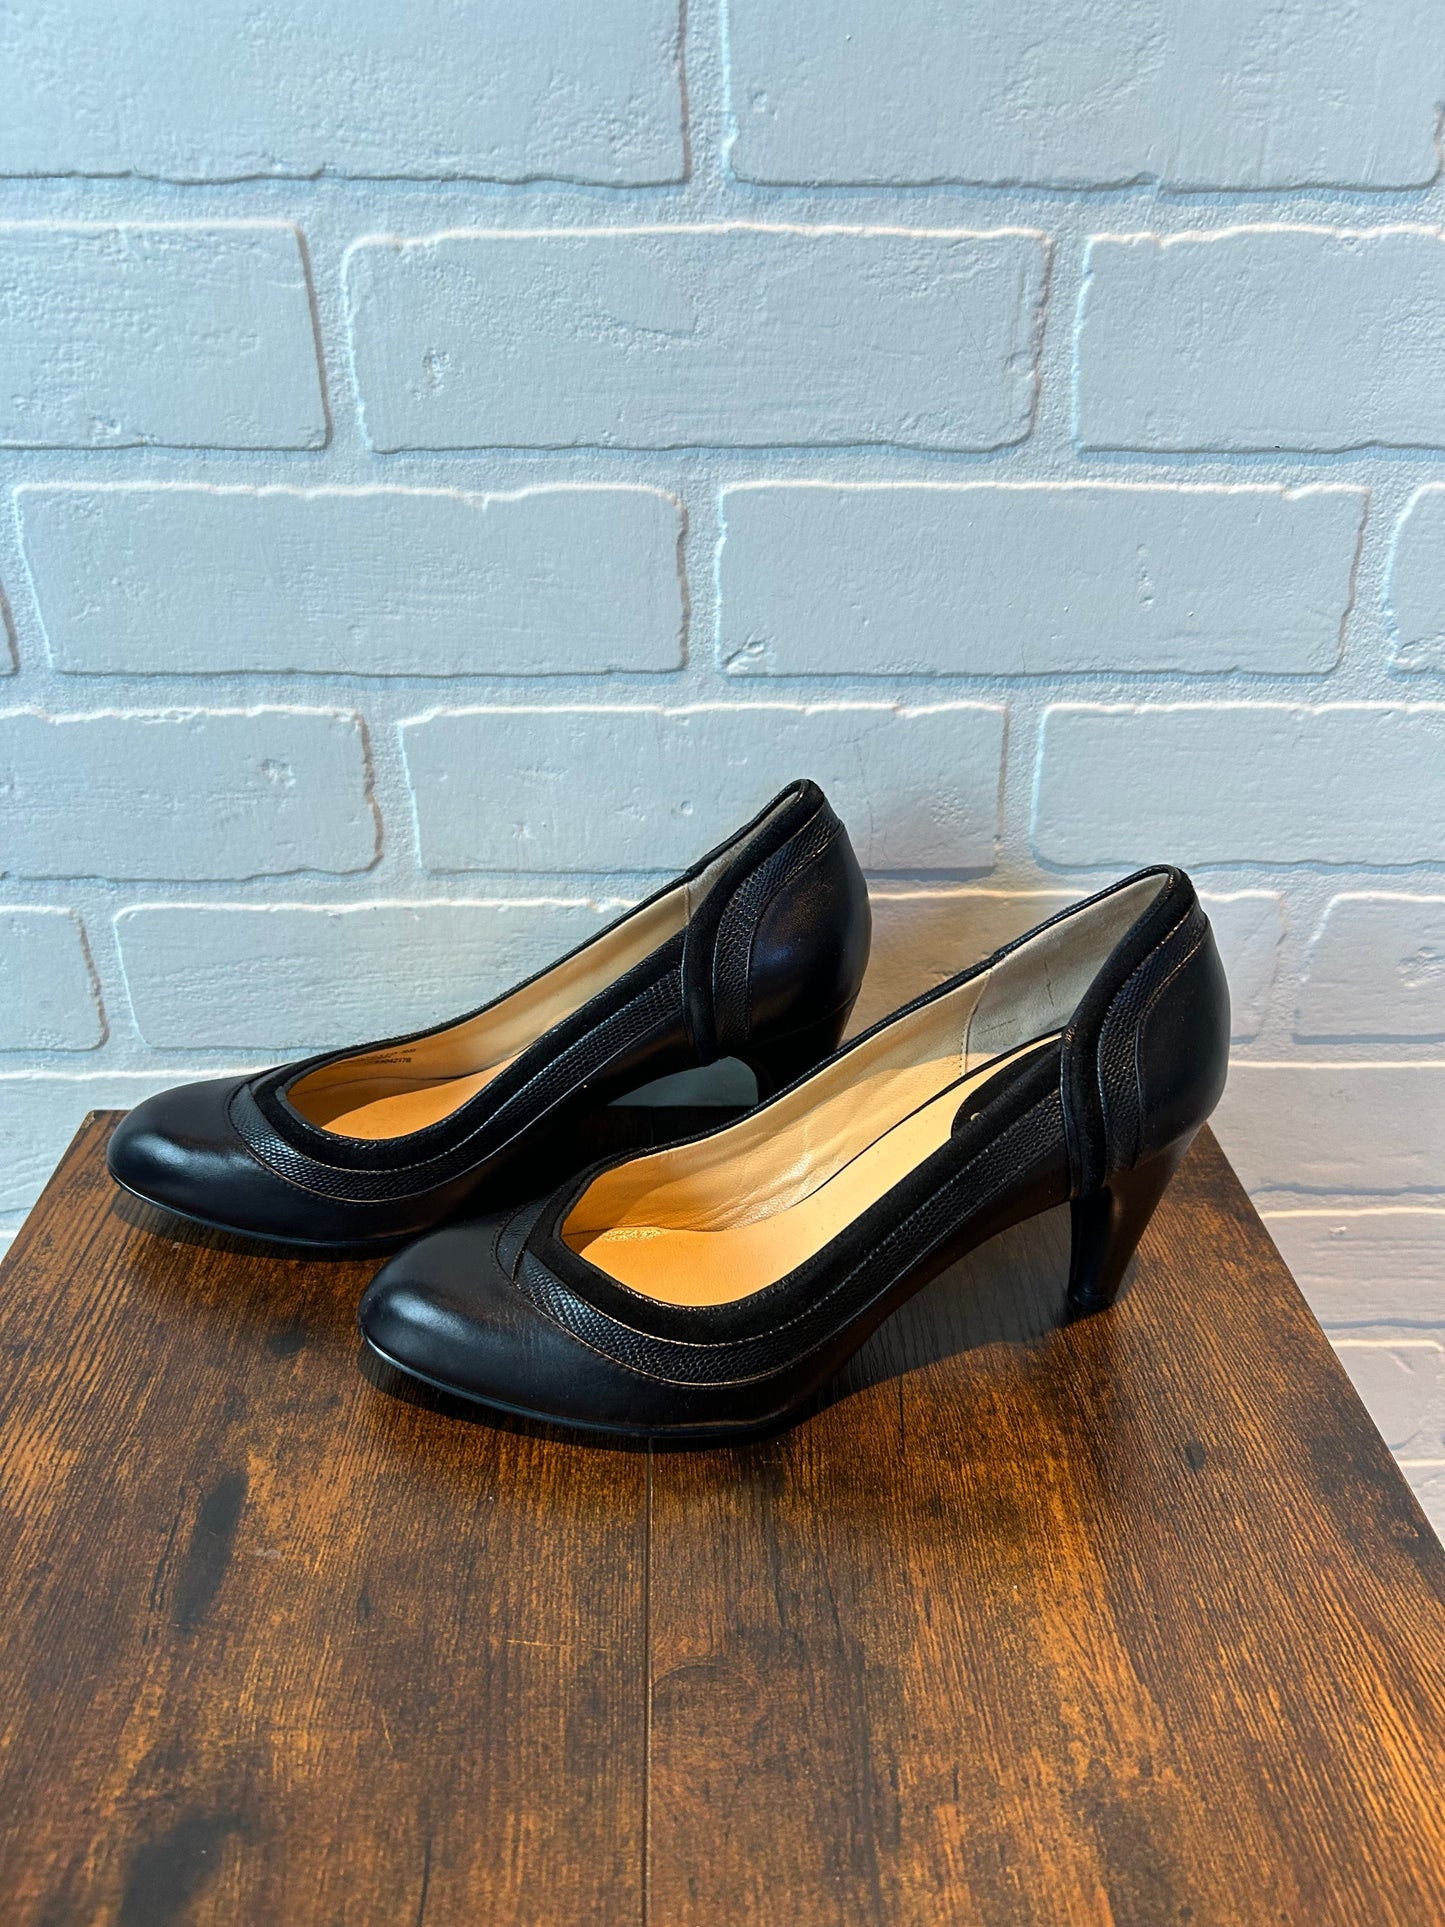 Black Shoes Heels Block Cole-haan, Size 8